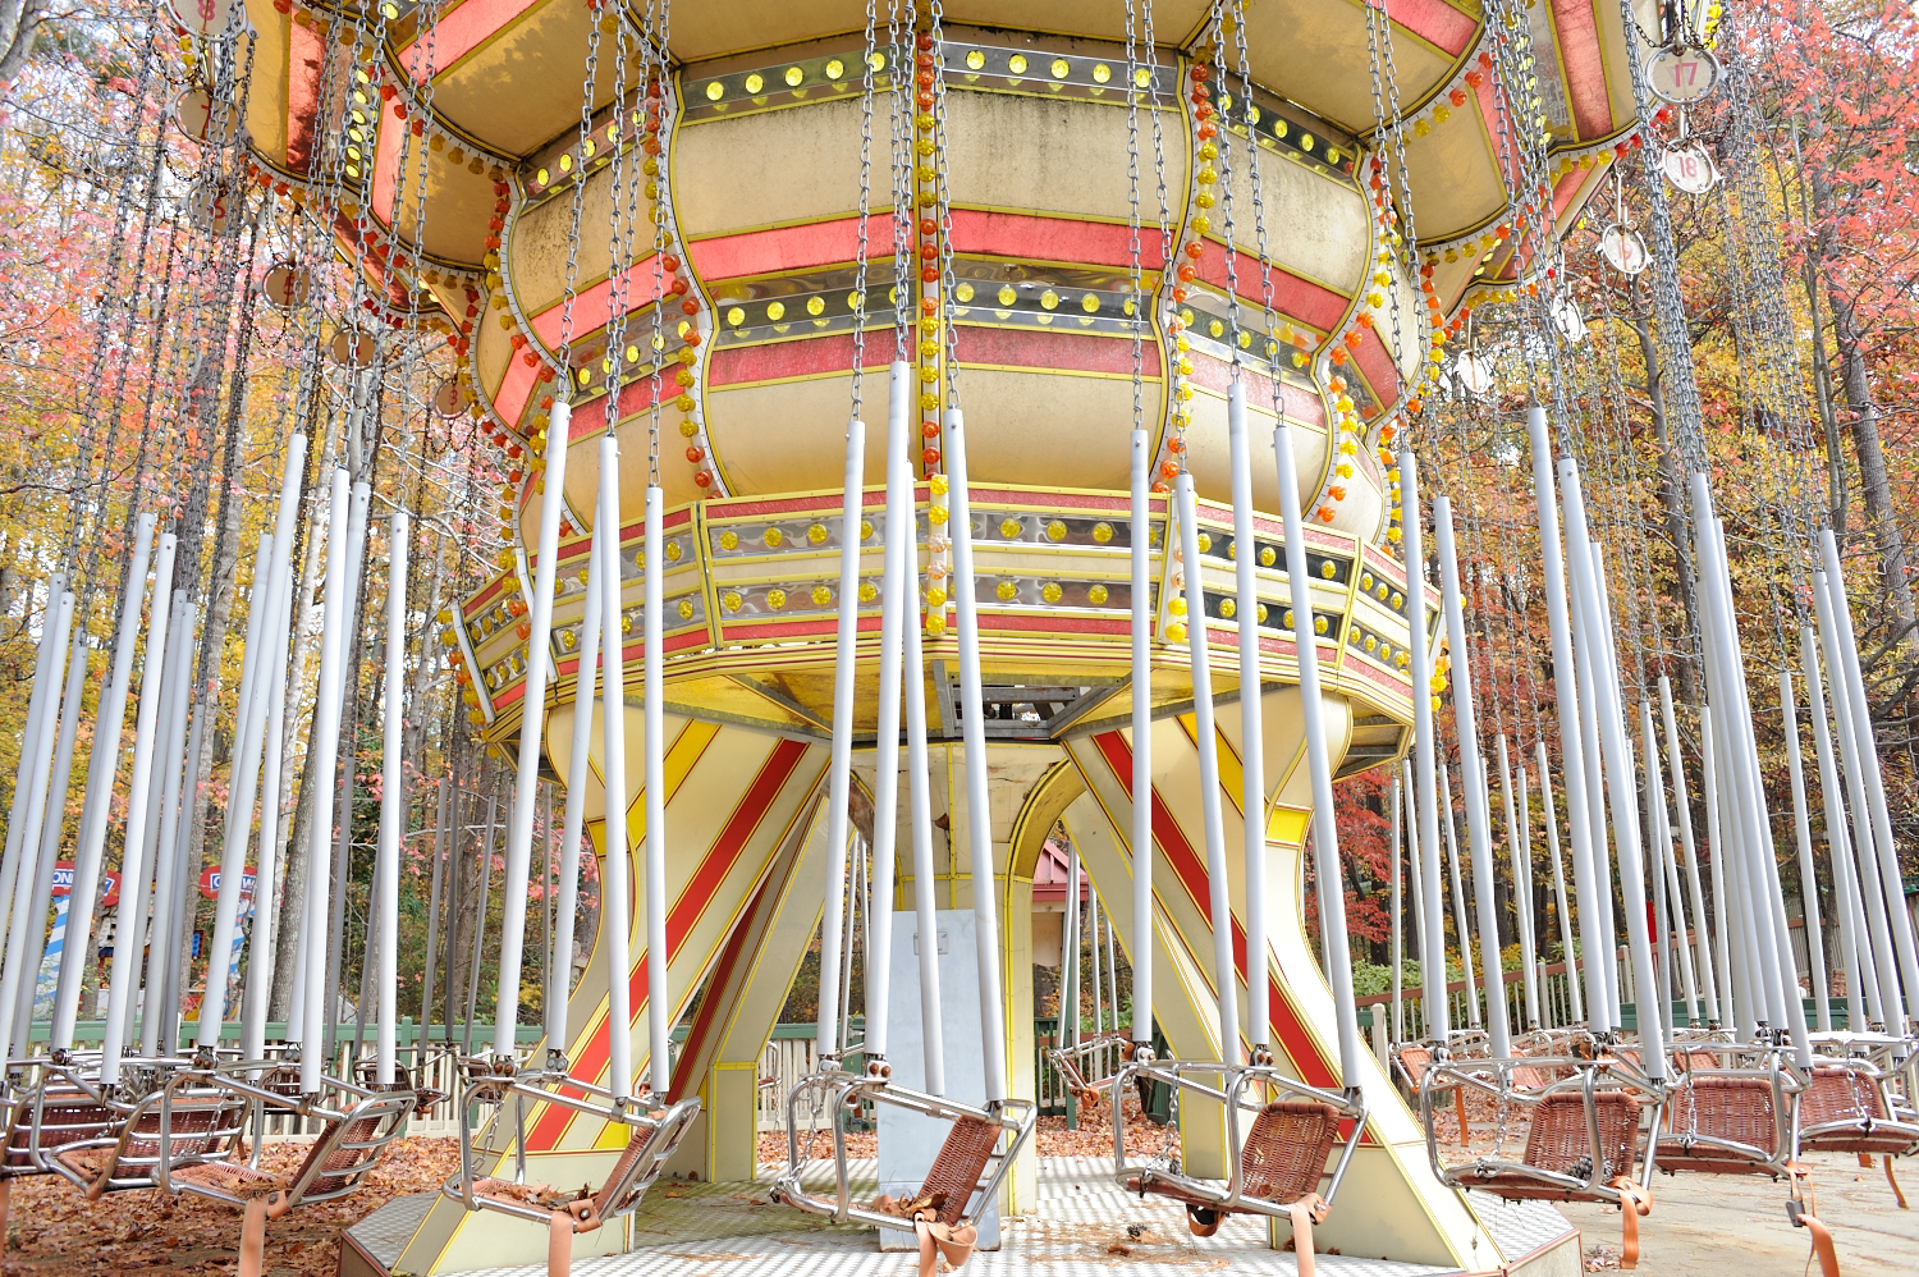 Autumn Carousel by Andrew Feiler